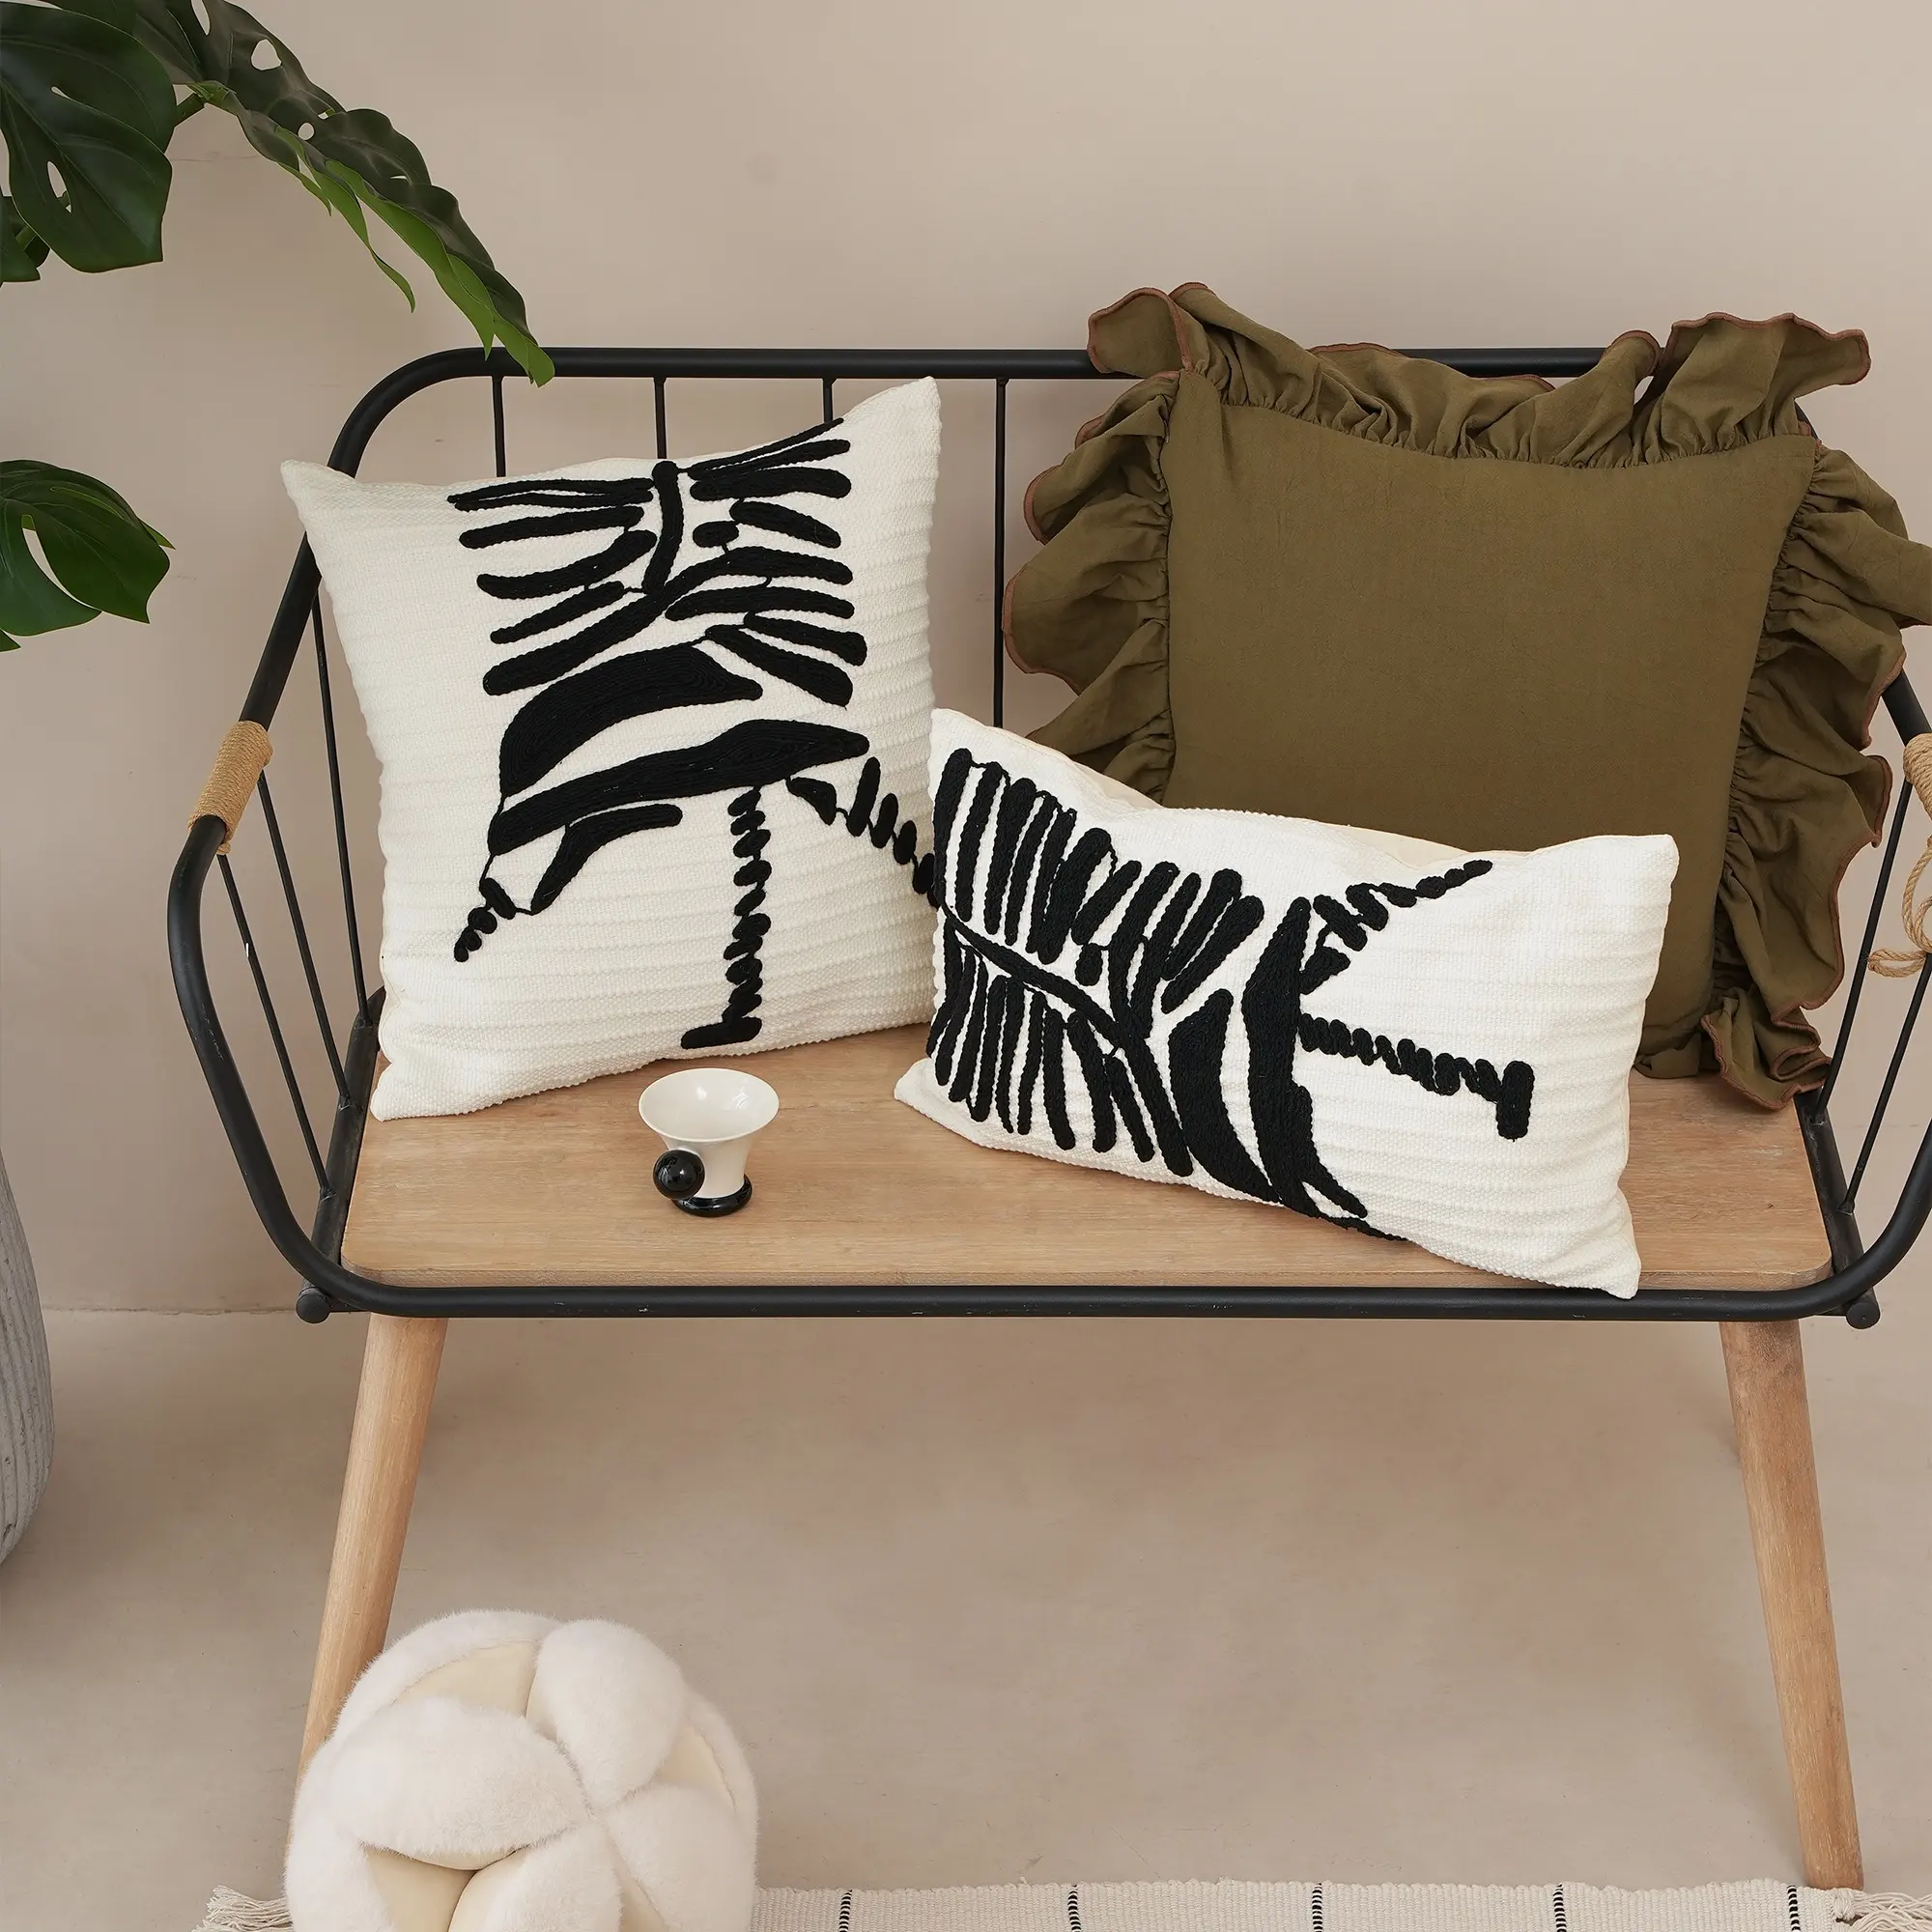 새로운 독창적 인 디자인 자수 베개 커버 비 현실적인 아트 스타일 홈 장식 베개 커버